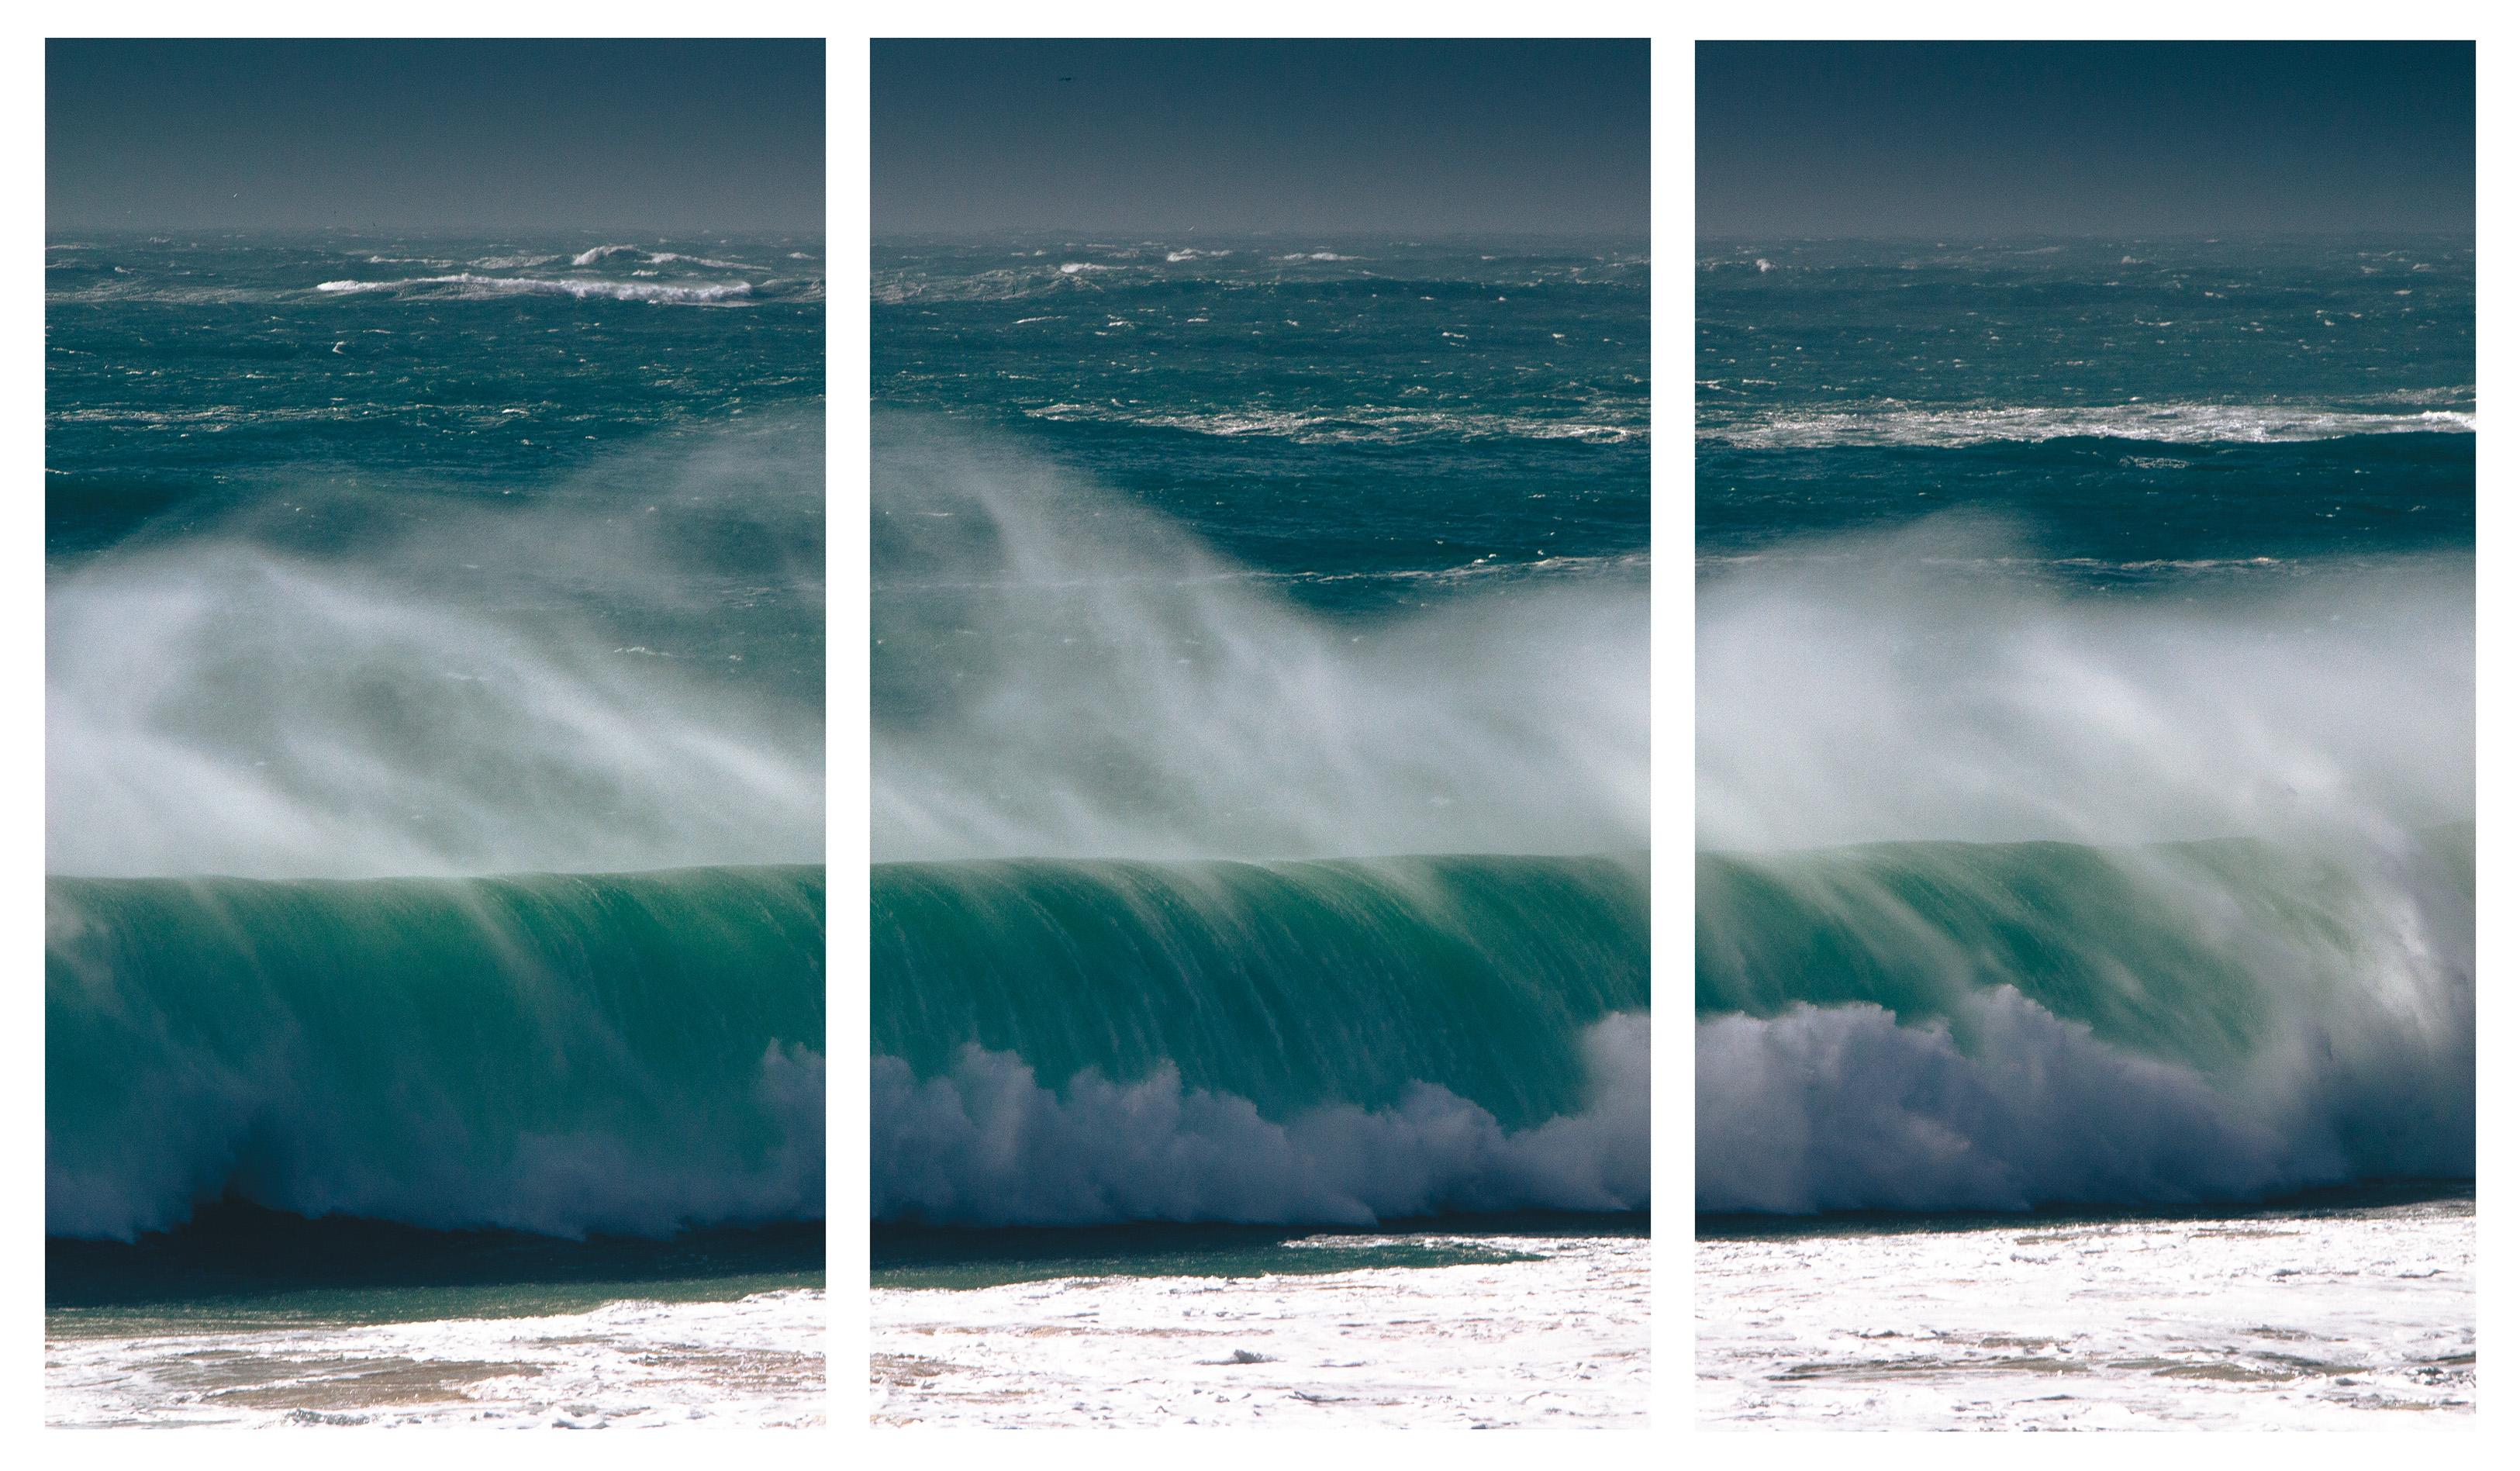 Photographie triptyque à grande échelle « Pounding Heart ». Océan, mer, vague de cottage de plage